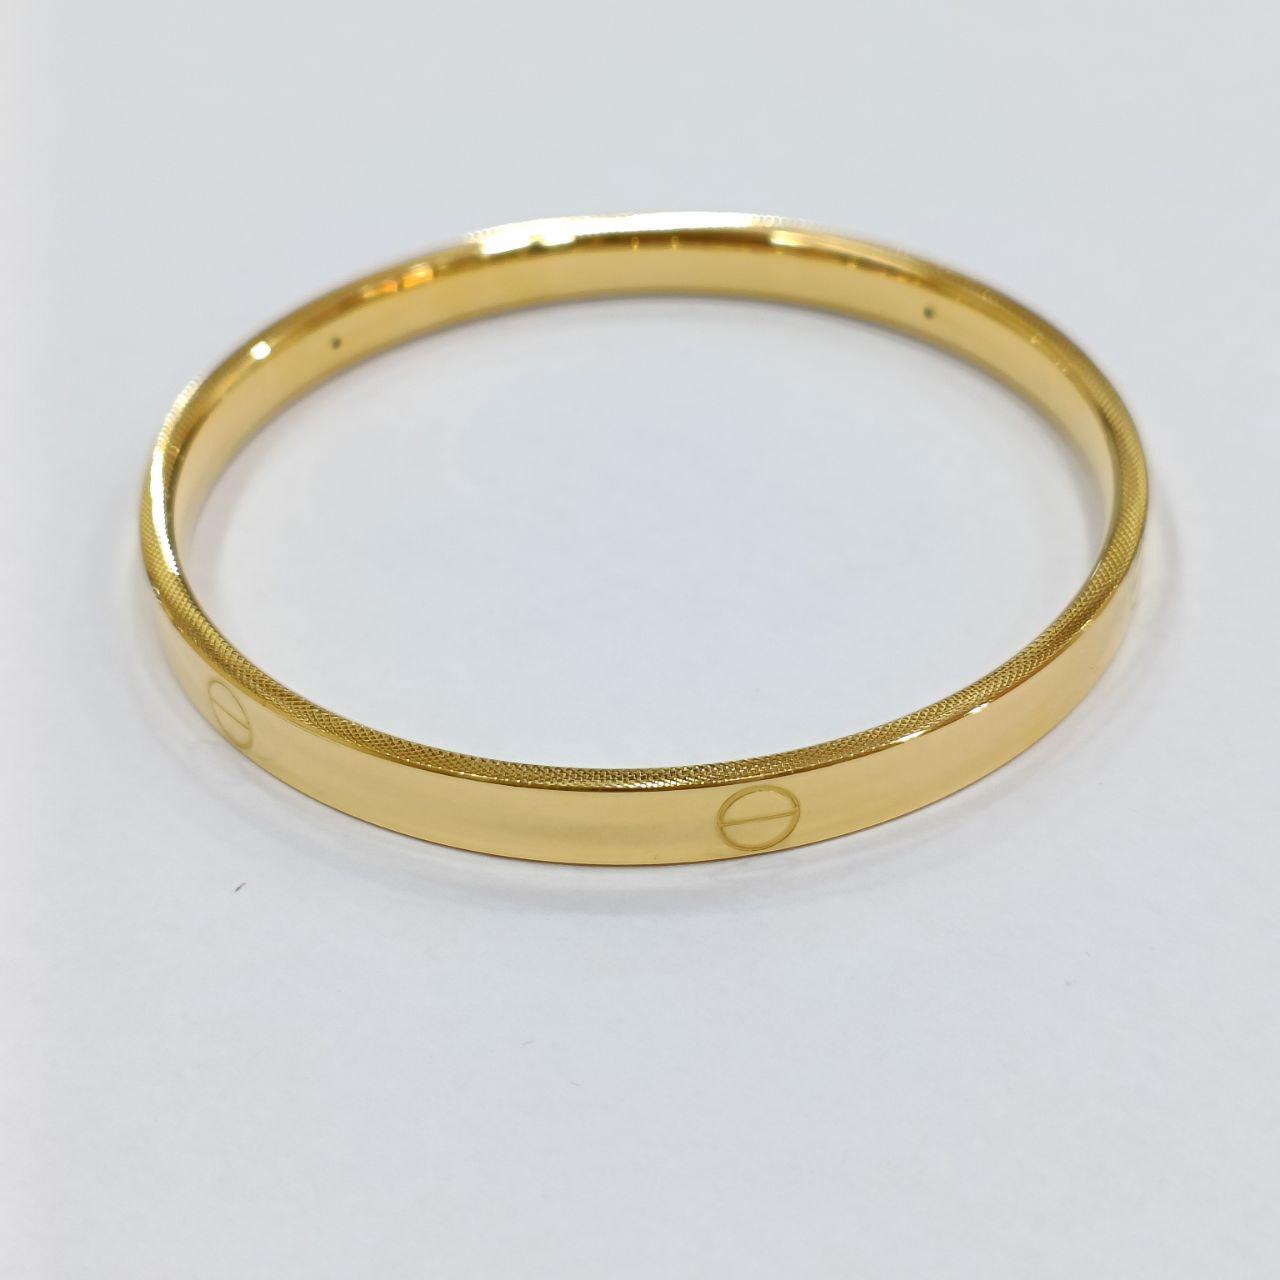 24K / 999 Gold C design no lock bangle-999 gold-Best Gold Shop